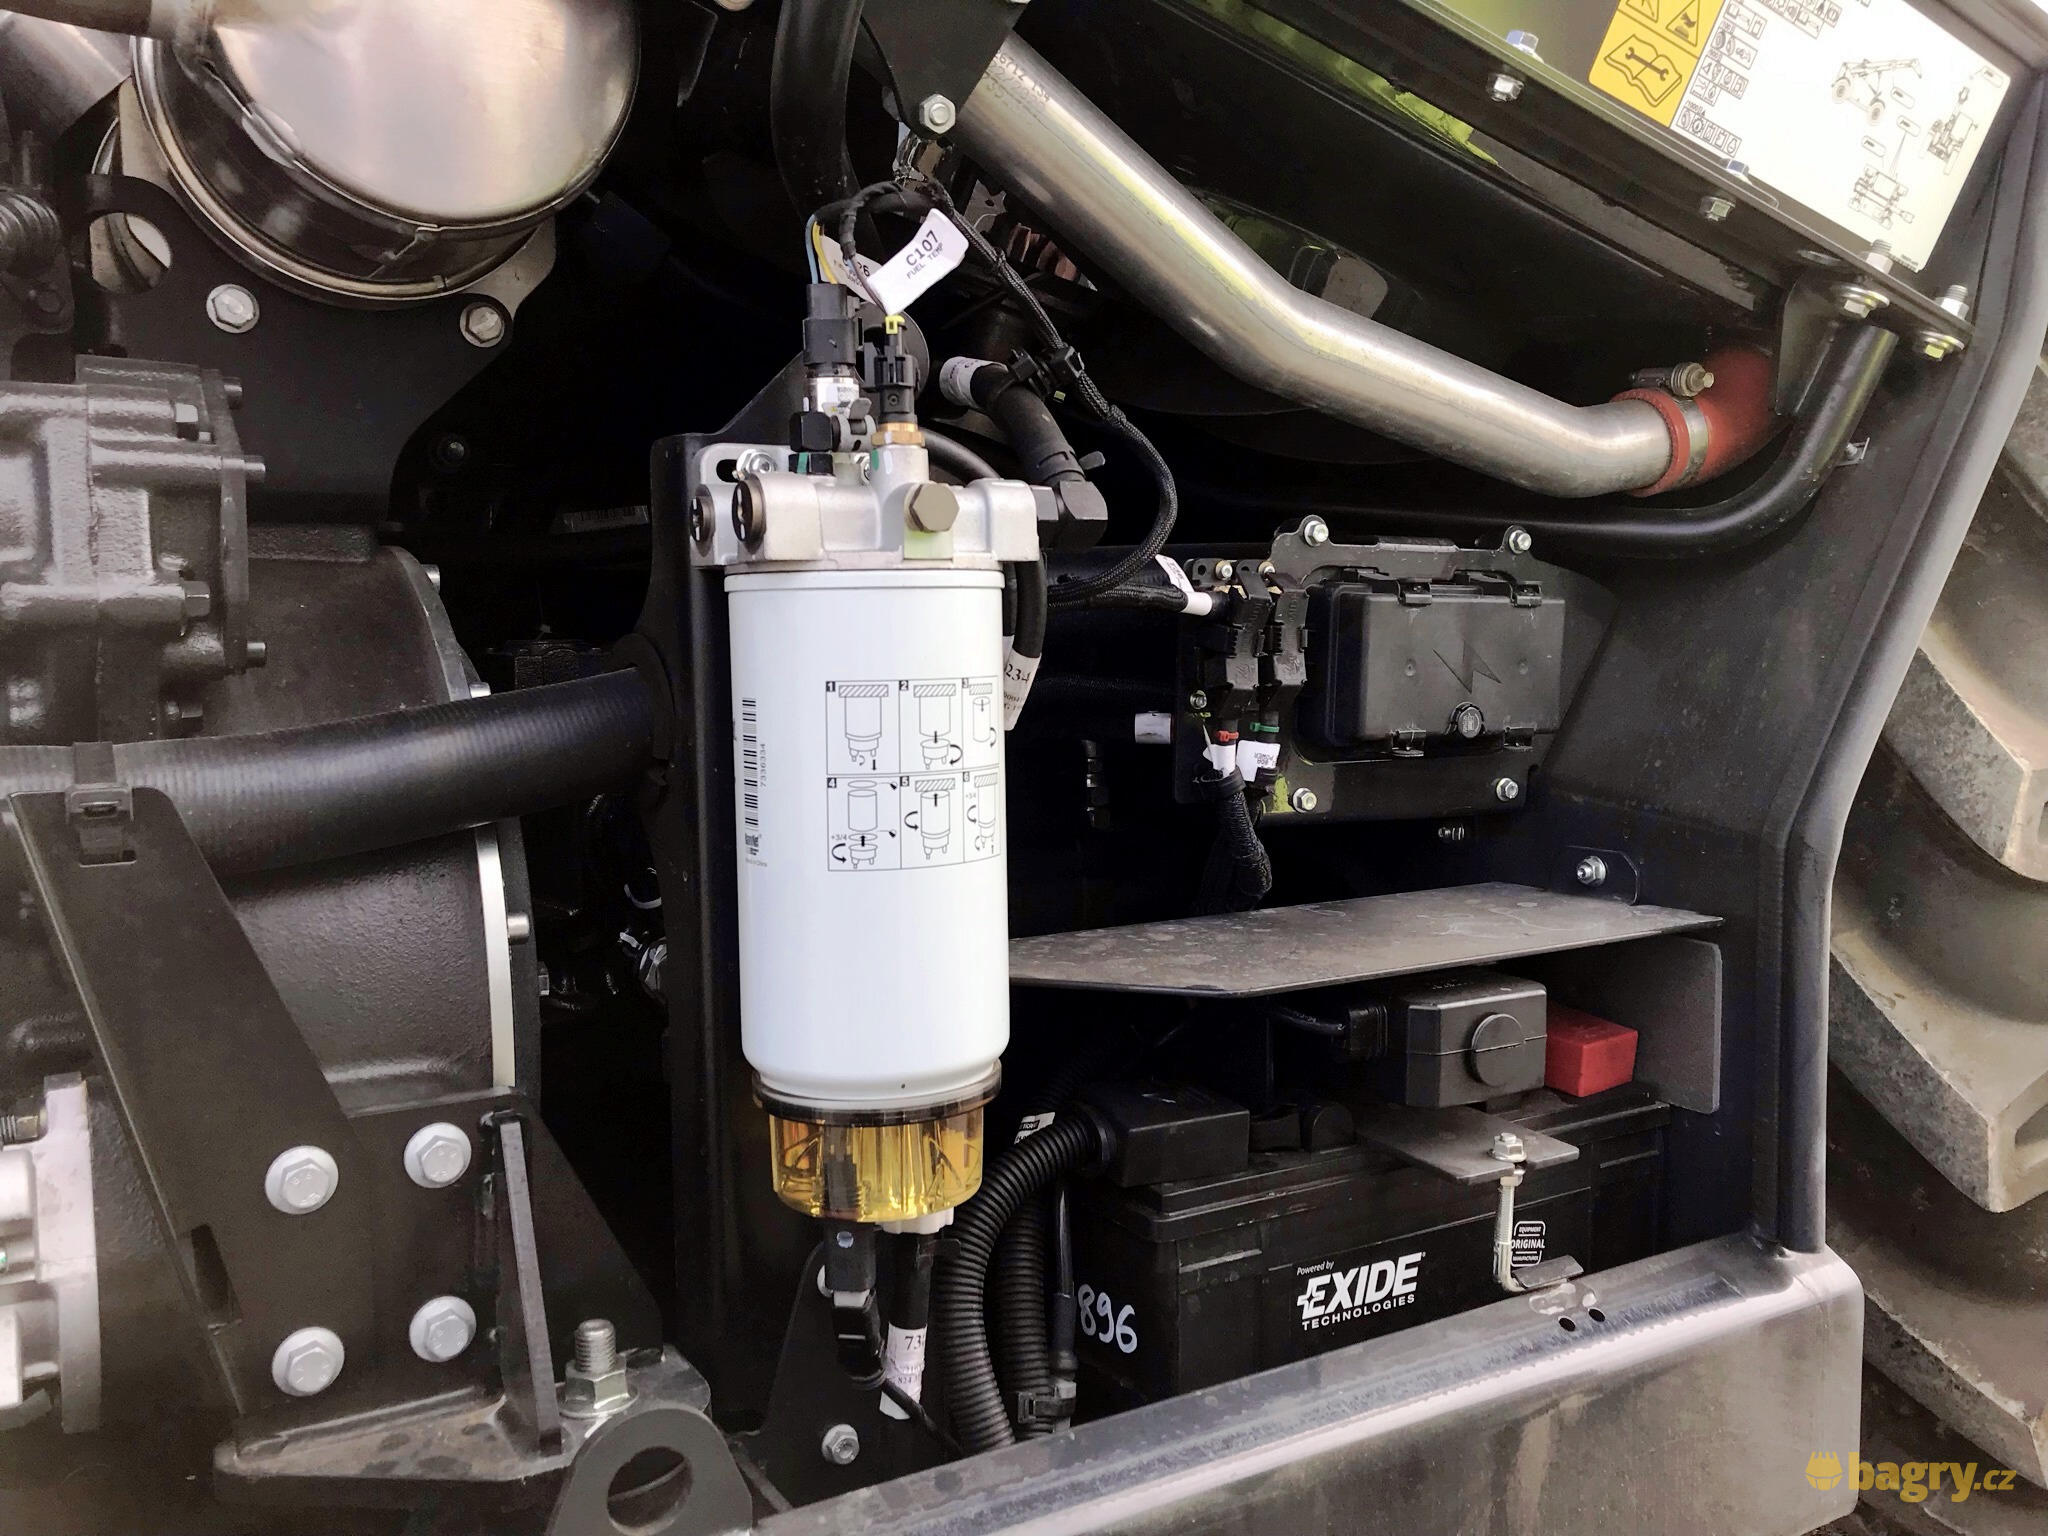 68. Palivový filtr a akumulátor s automatickým odpojovačem